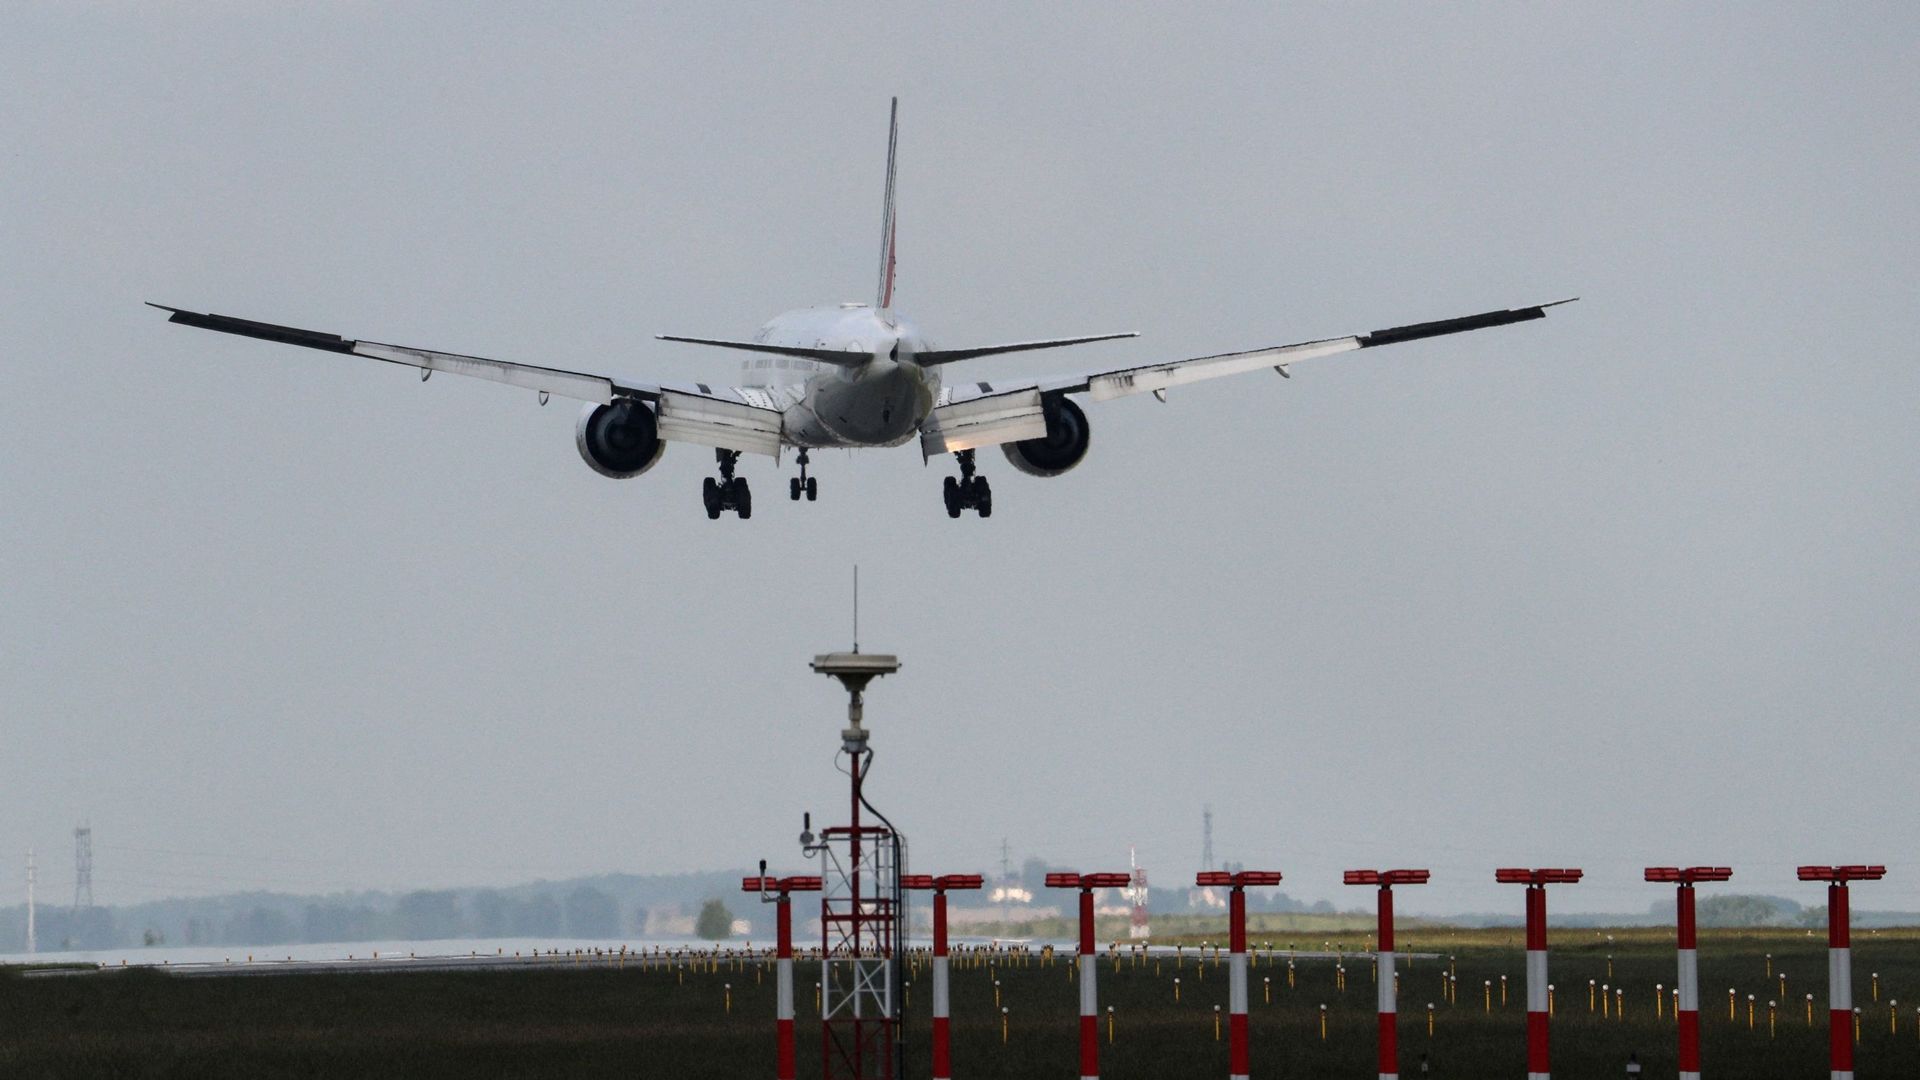 Un avion Boeing 777-300ER de la compagnie Air France-KLM arrive pour se poser sur le tarmac de l’aéroport de Roissy-Charles de Gaulle, le 3 juin 2021.